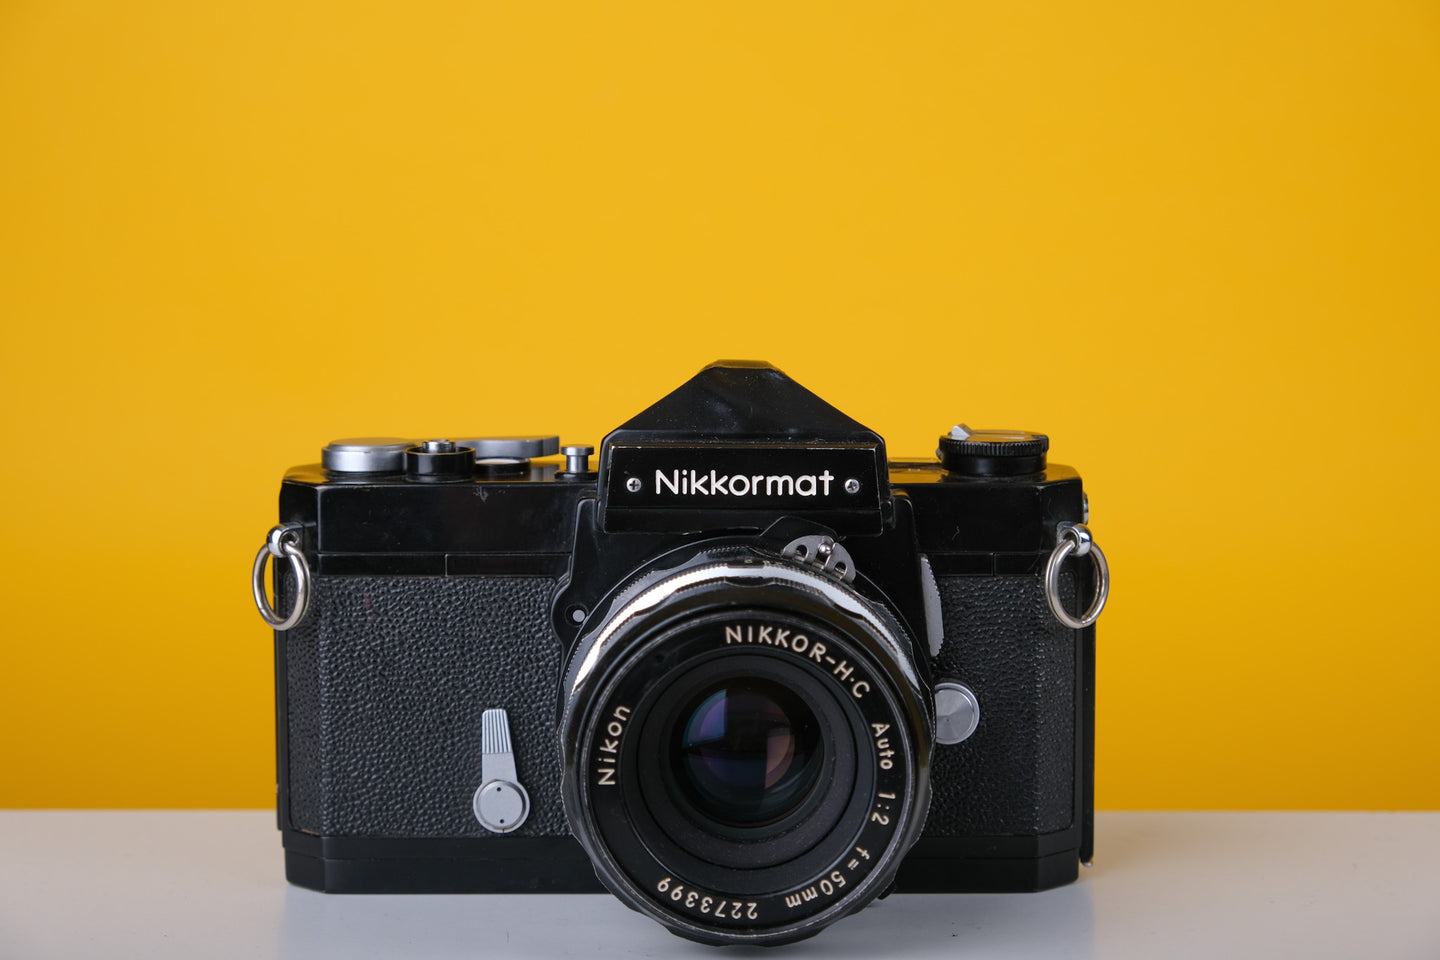 Nikkormat FT 35mm SLR Film Camera with Nikkor 50mm f2